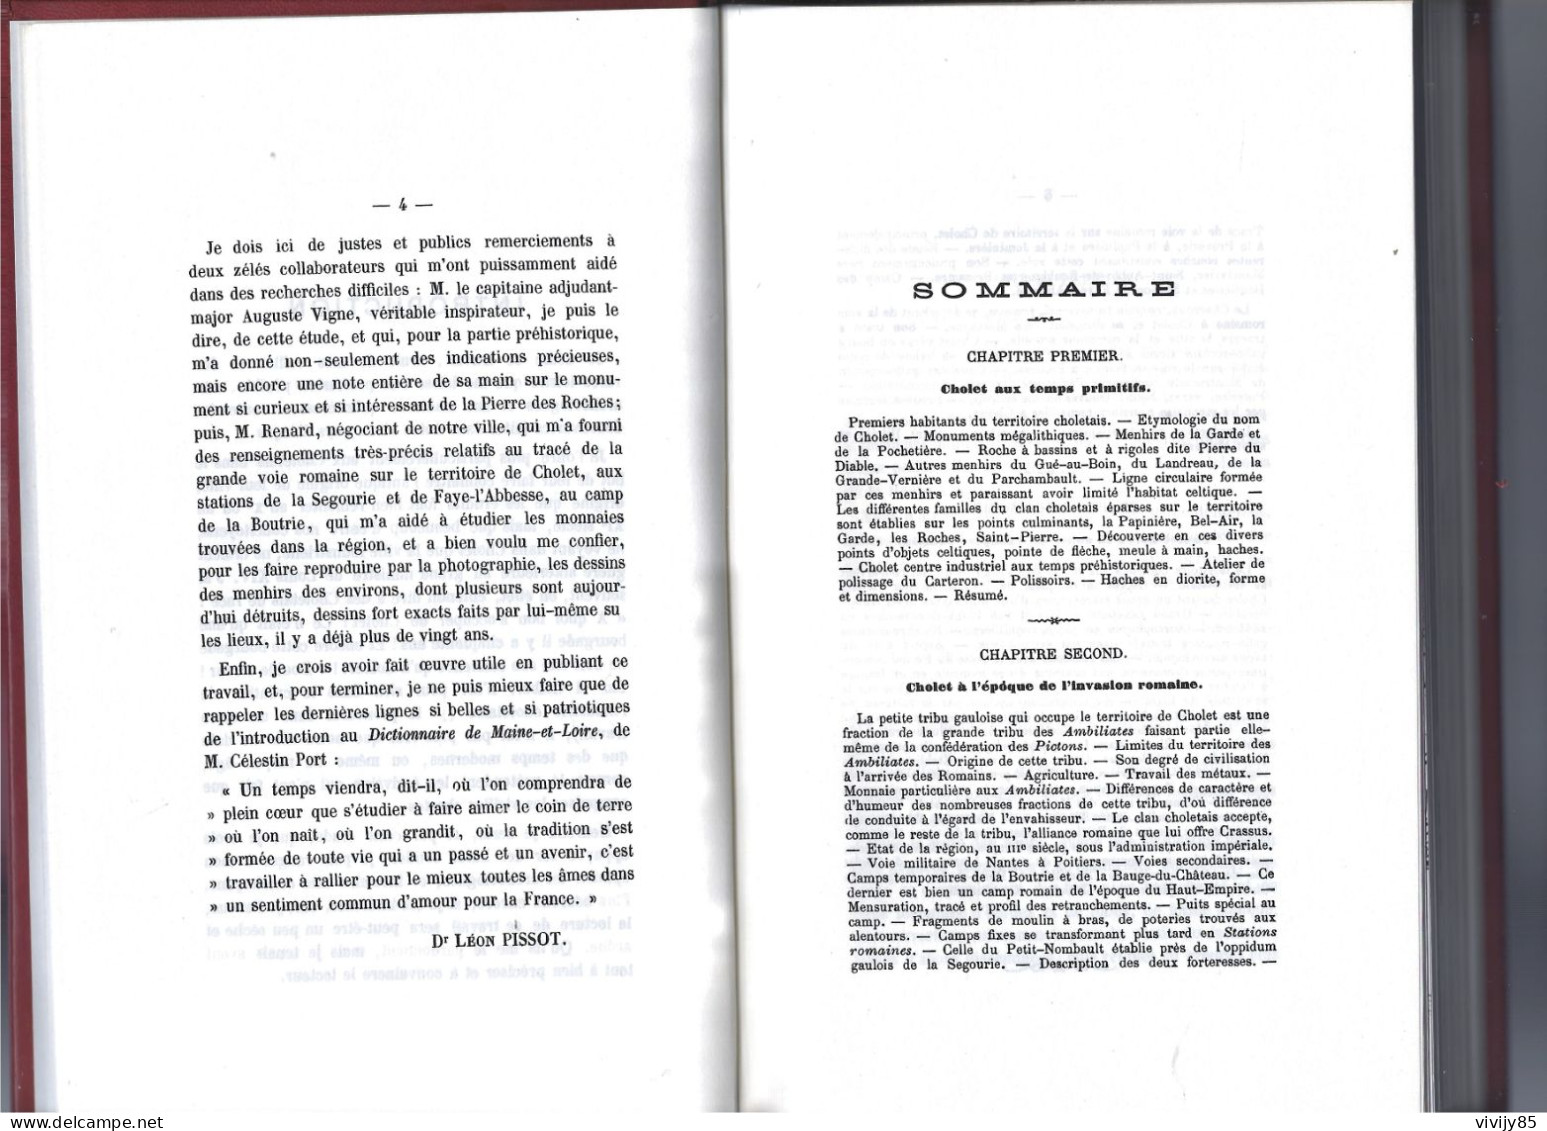 49 - CHOLET - Beau livre numéroté " Histoire de Cholet " par le Docteur Léon Pissot